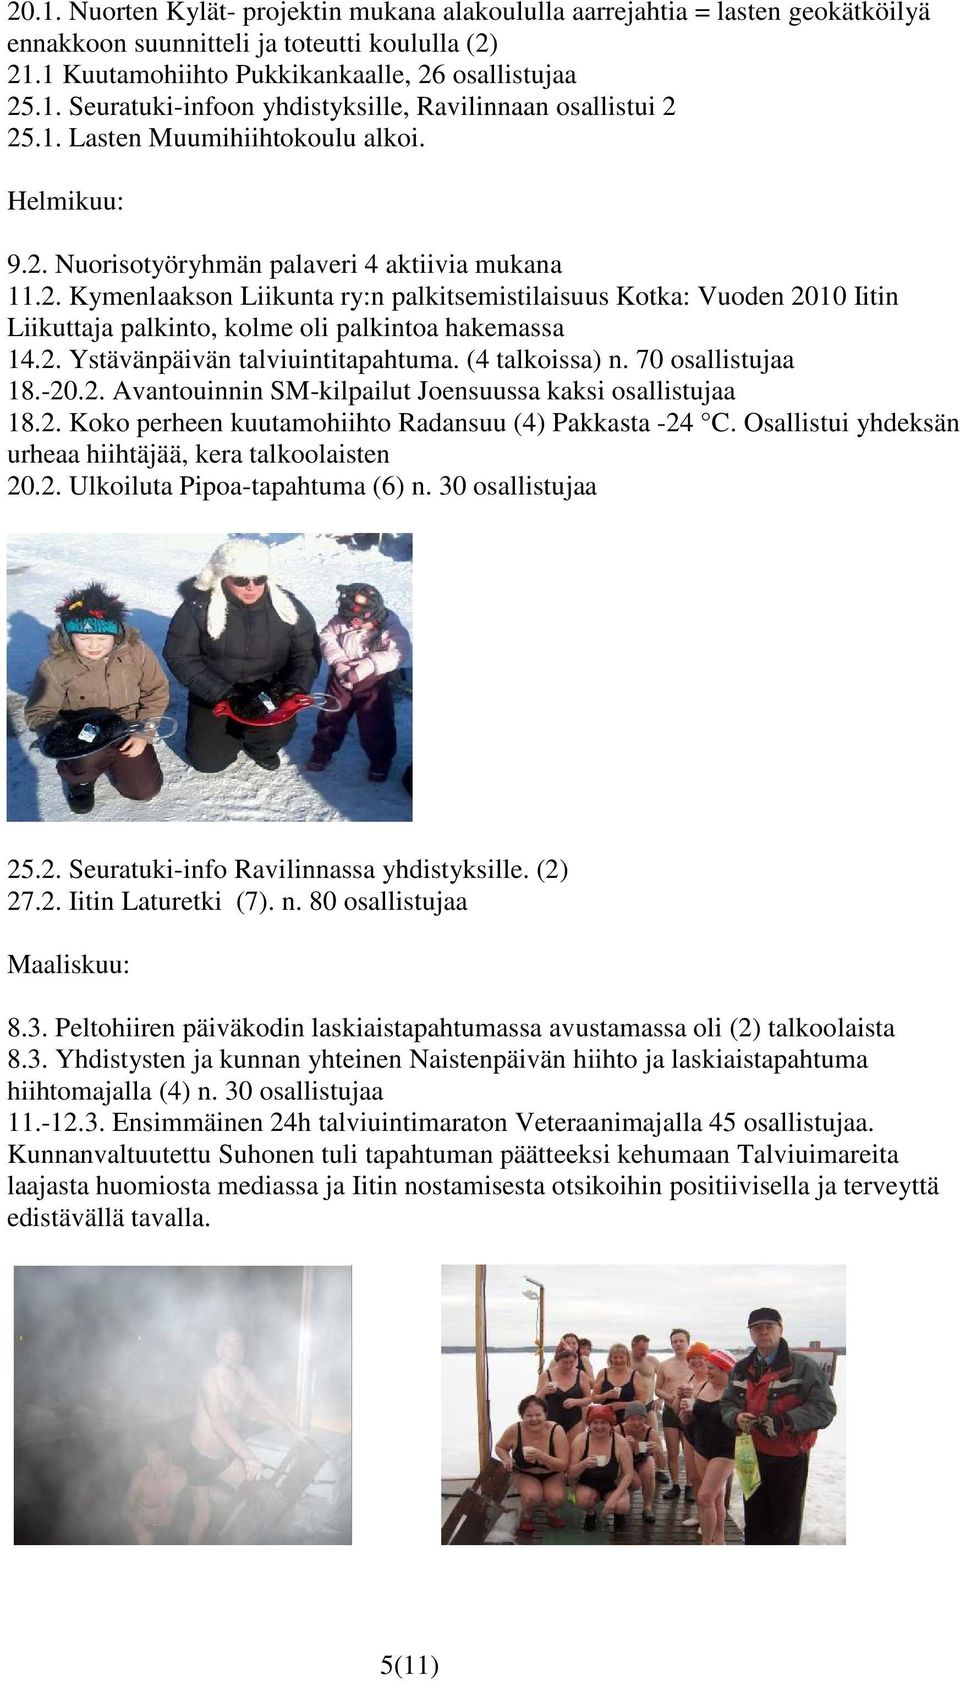 2. Ystävänpäivän talviuintitapahtuma. (4 talkoissa) n. 70 osallistujaa 18.-20.2. Avantouinnin SM-kilpailut Joensuussa kaksi osallistujaa 18.2. Koko perheen kuutamohiihto Radansuu (4) Pakkasta -24 C.